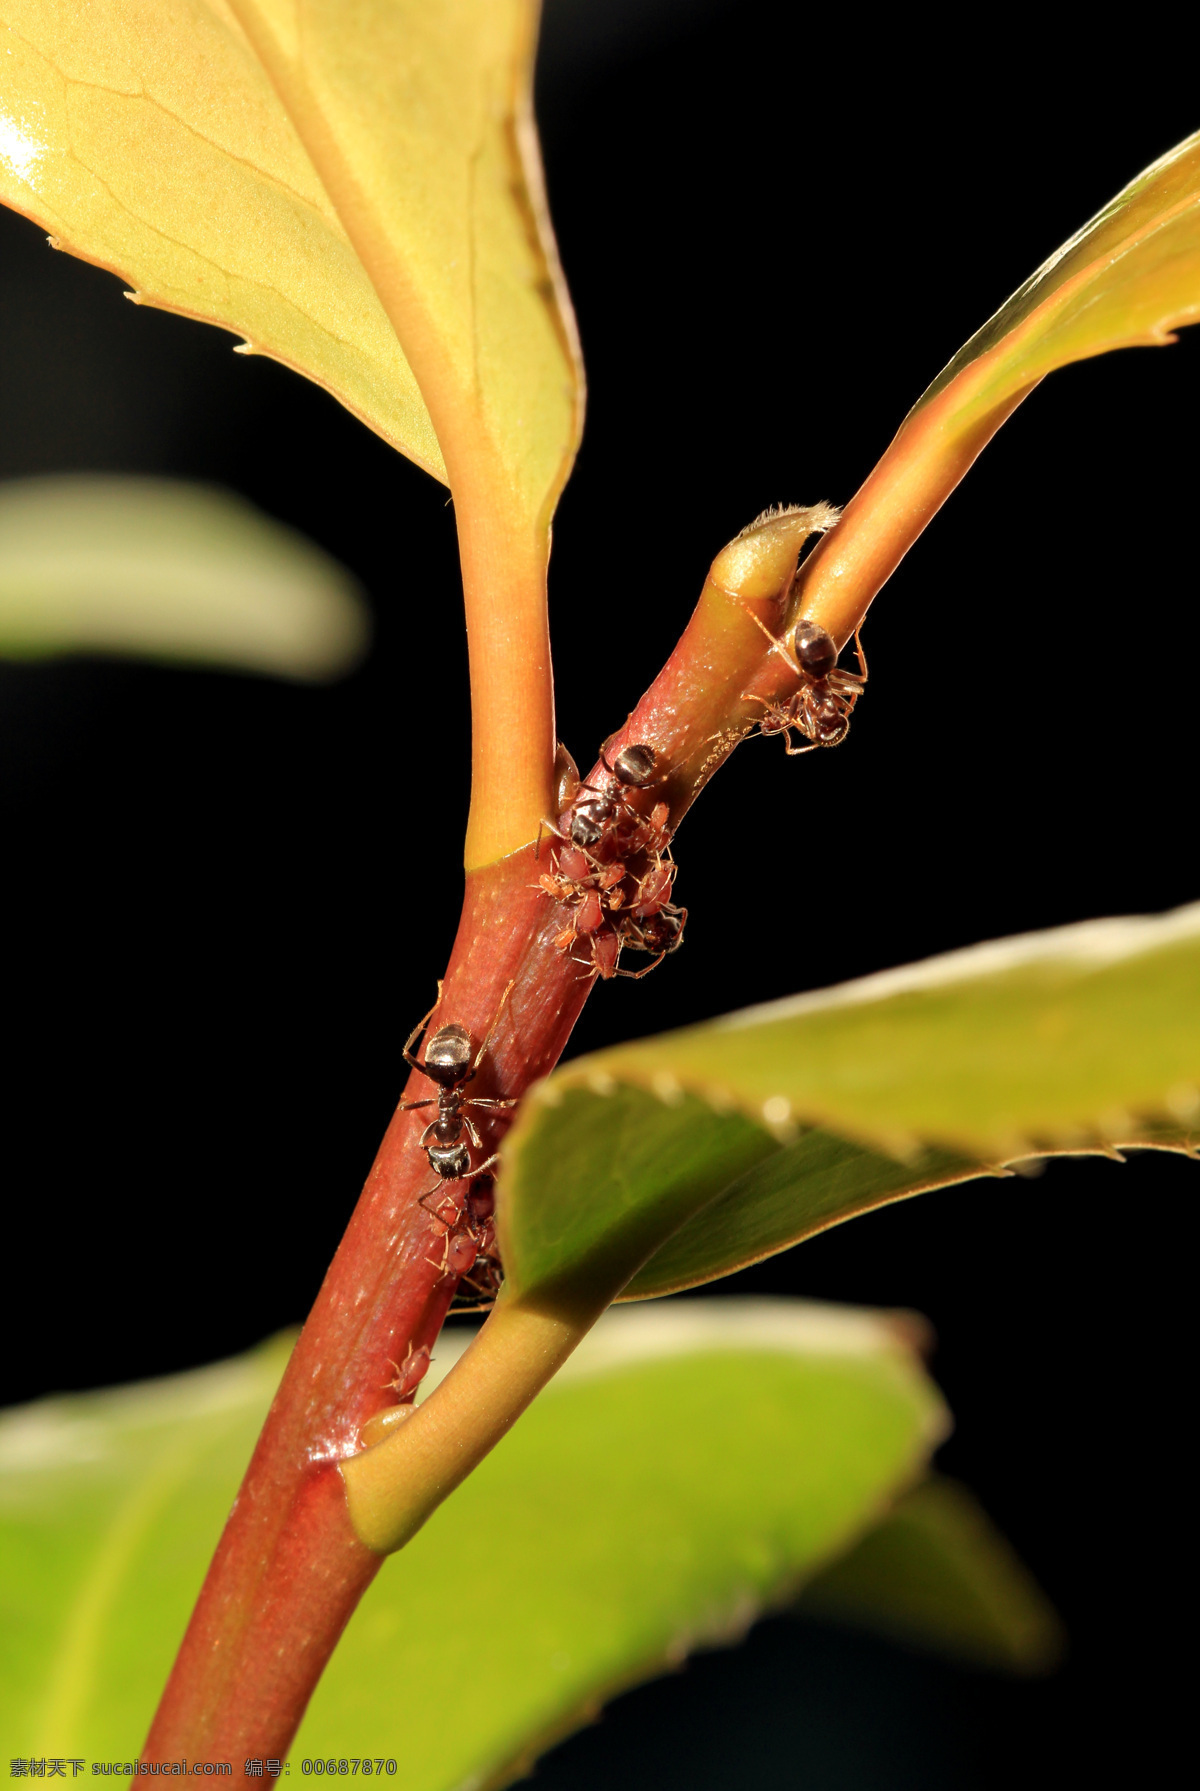 蚂蚁与蚜虫 蚂蚁 蚜虫 昆虫 生物世界 黑色